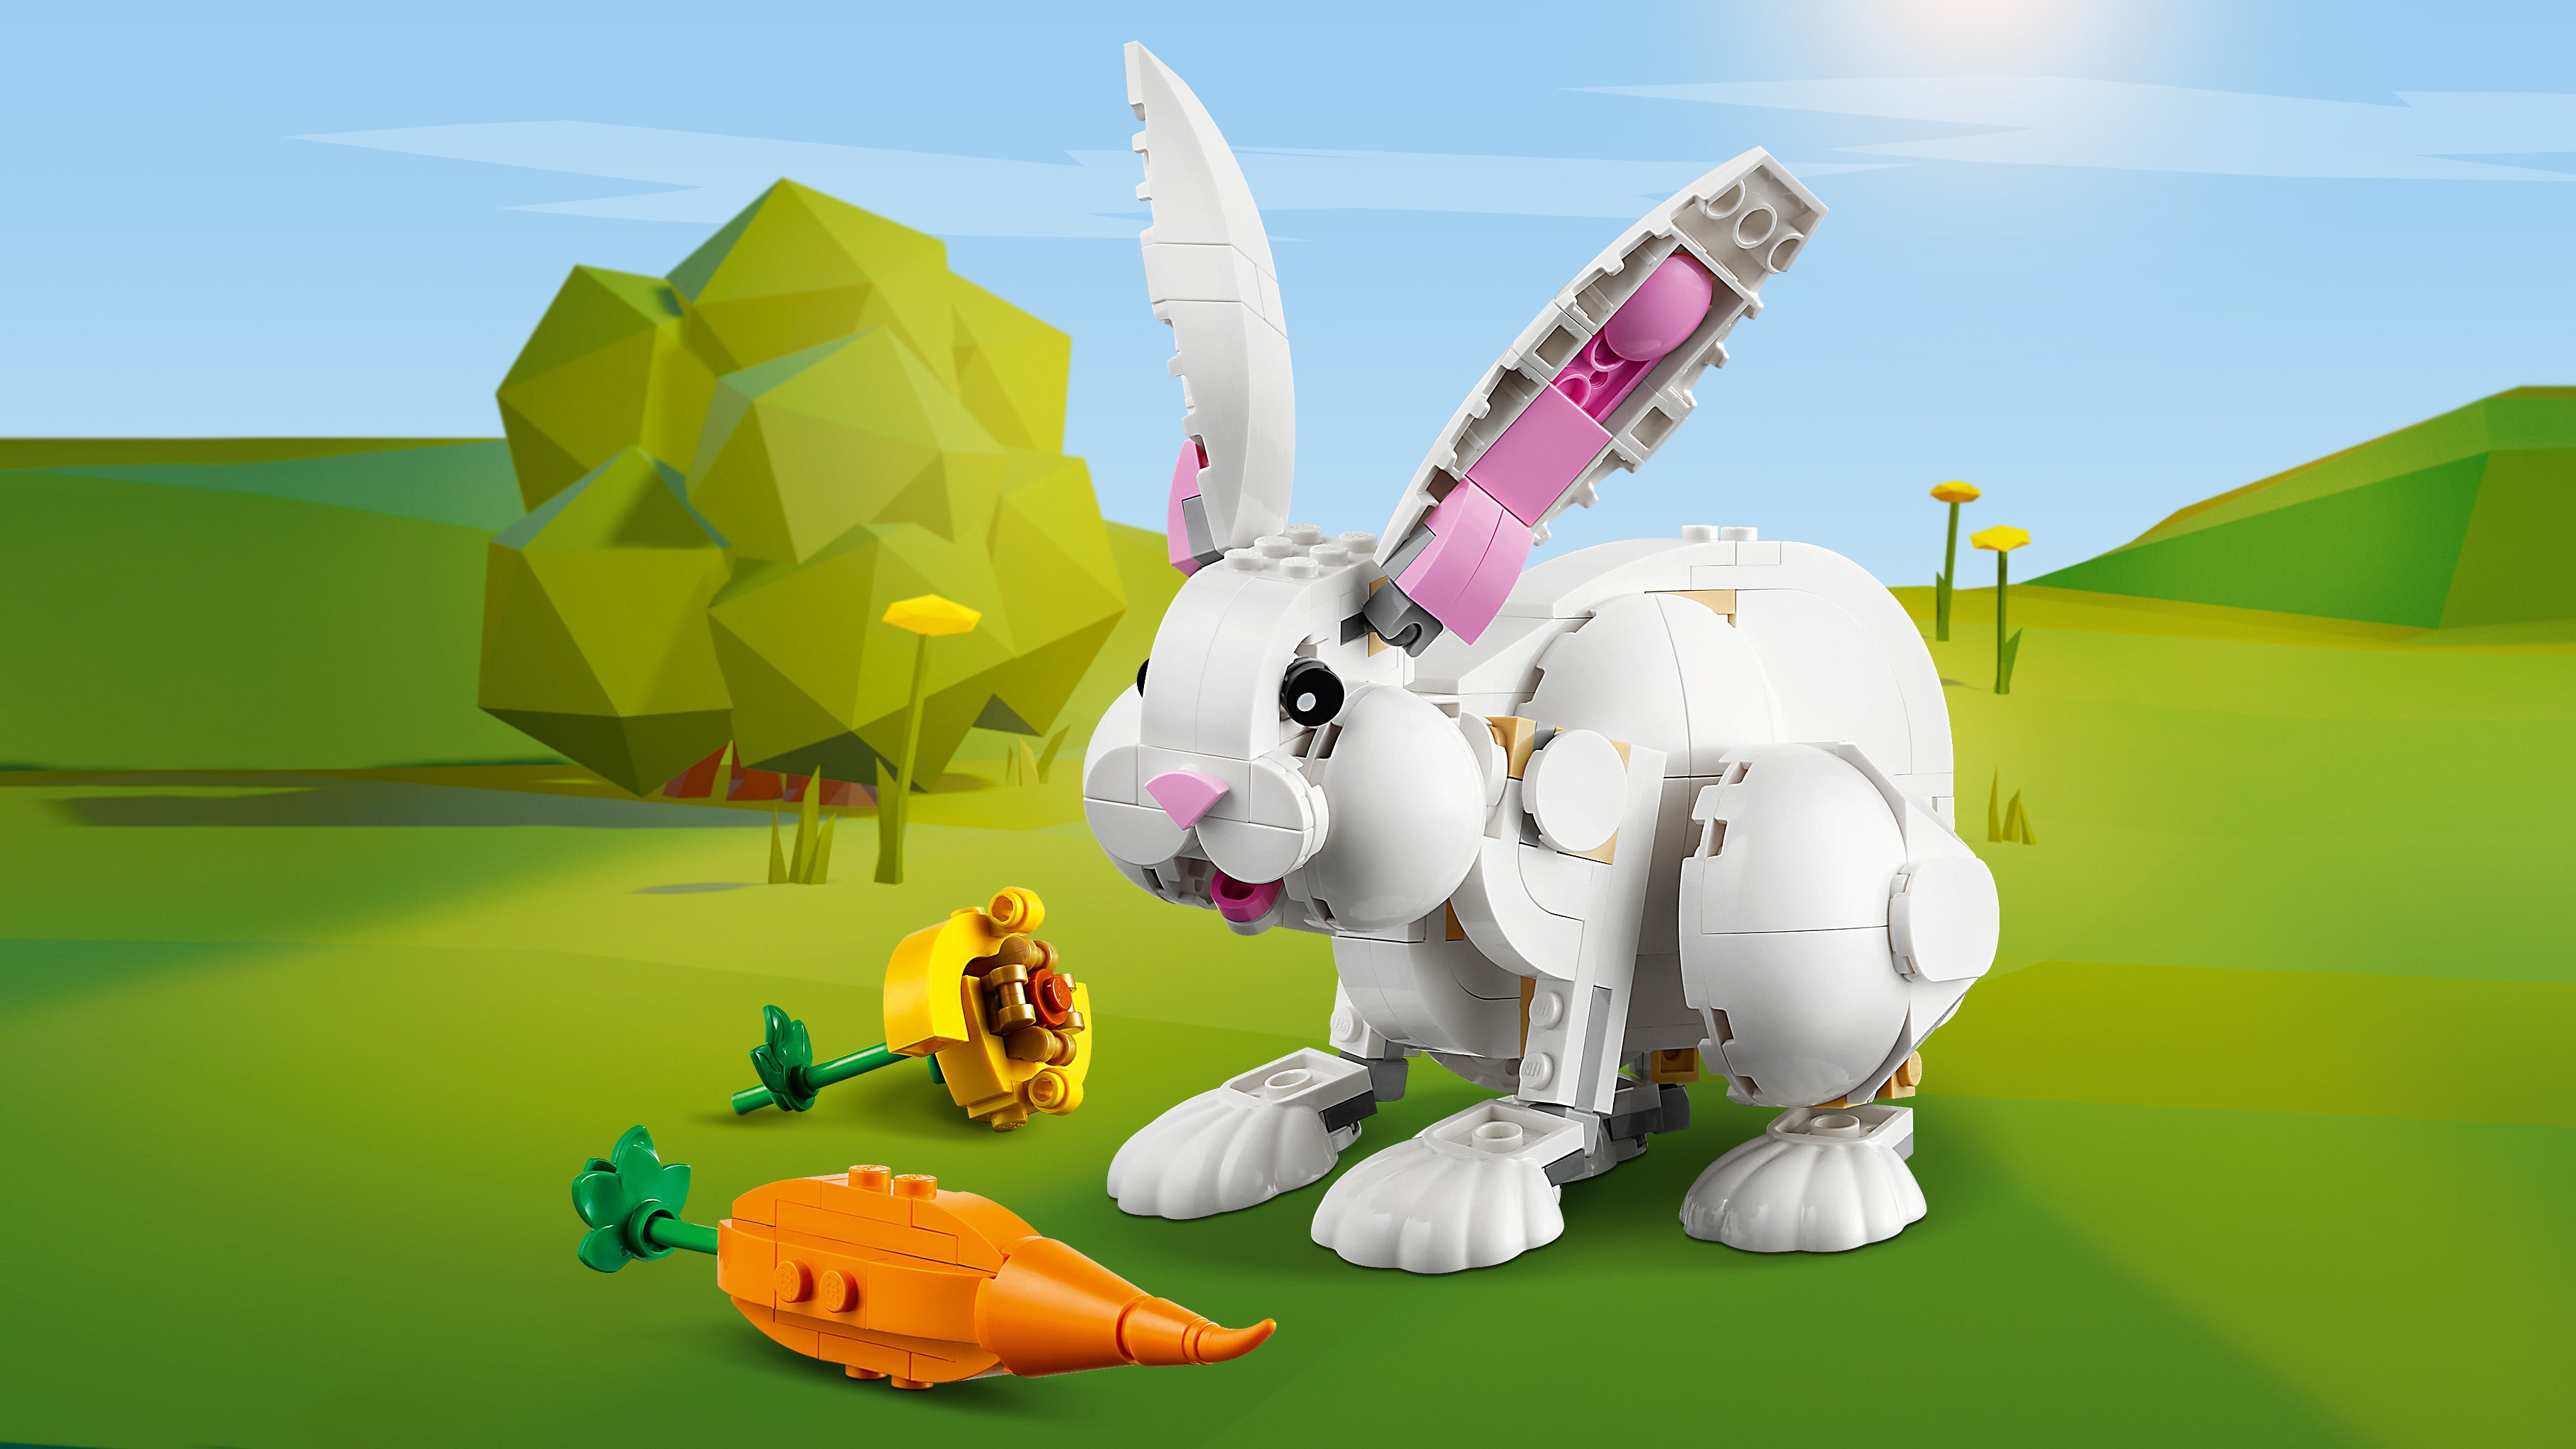 Lego 31133 White Rabbit